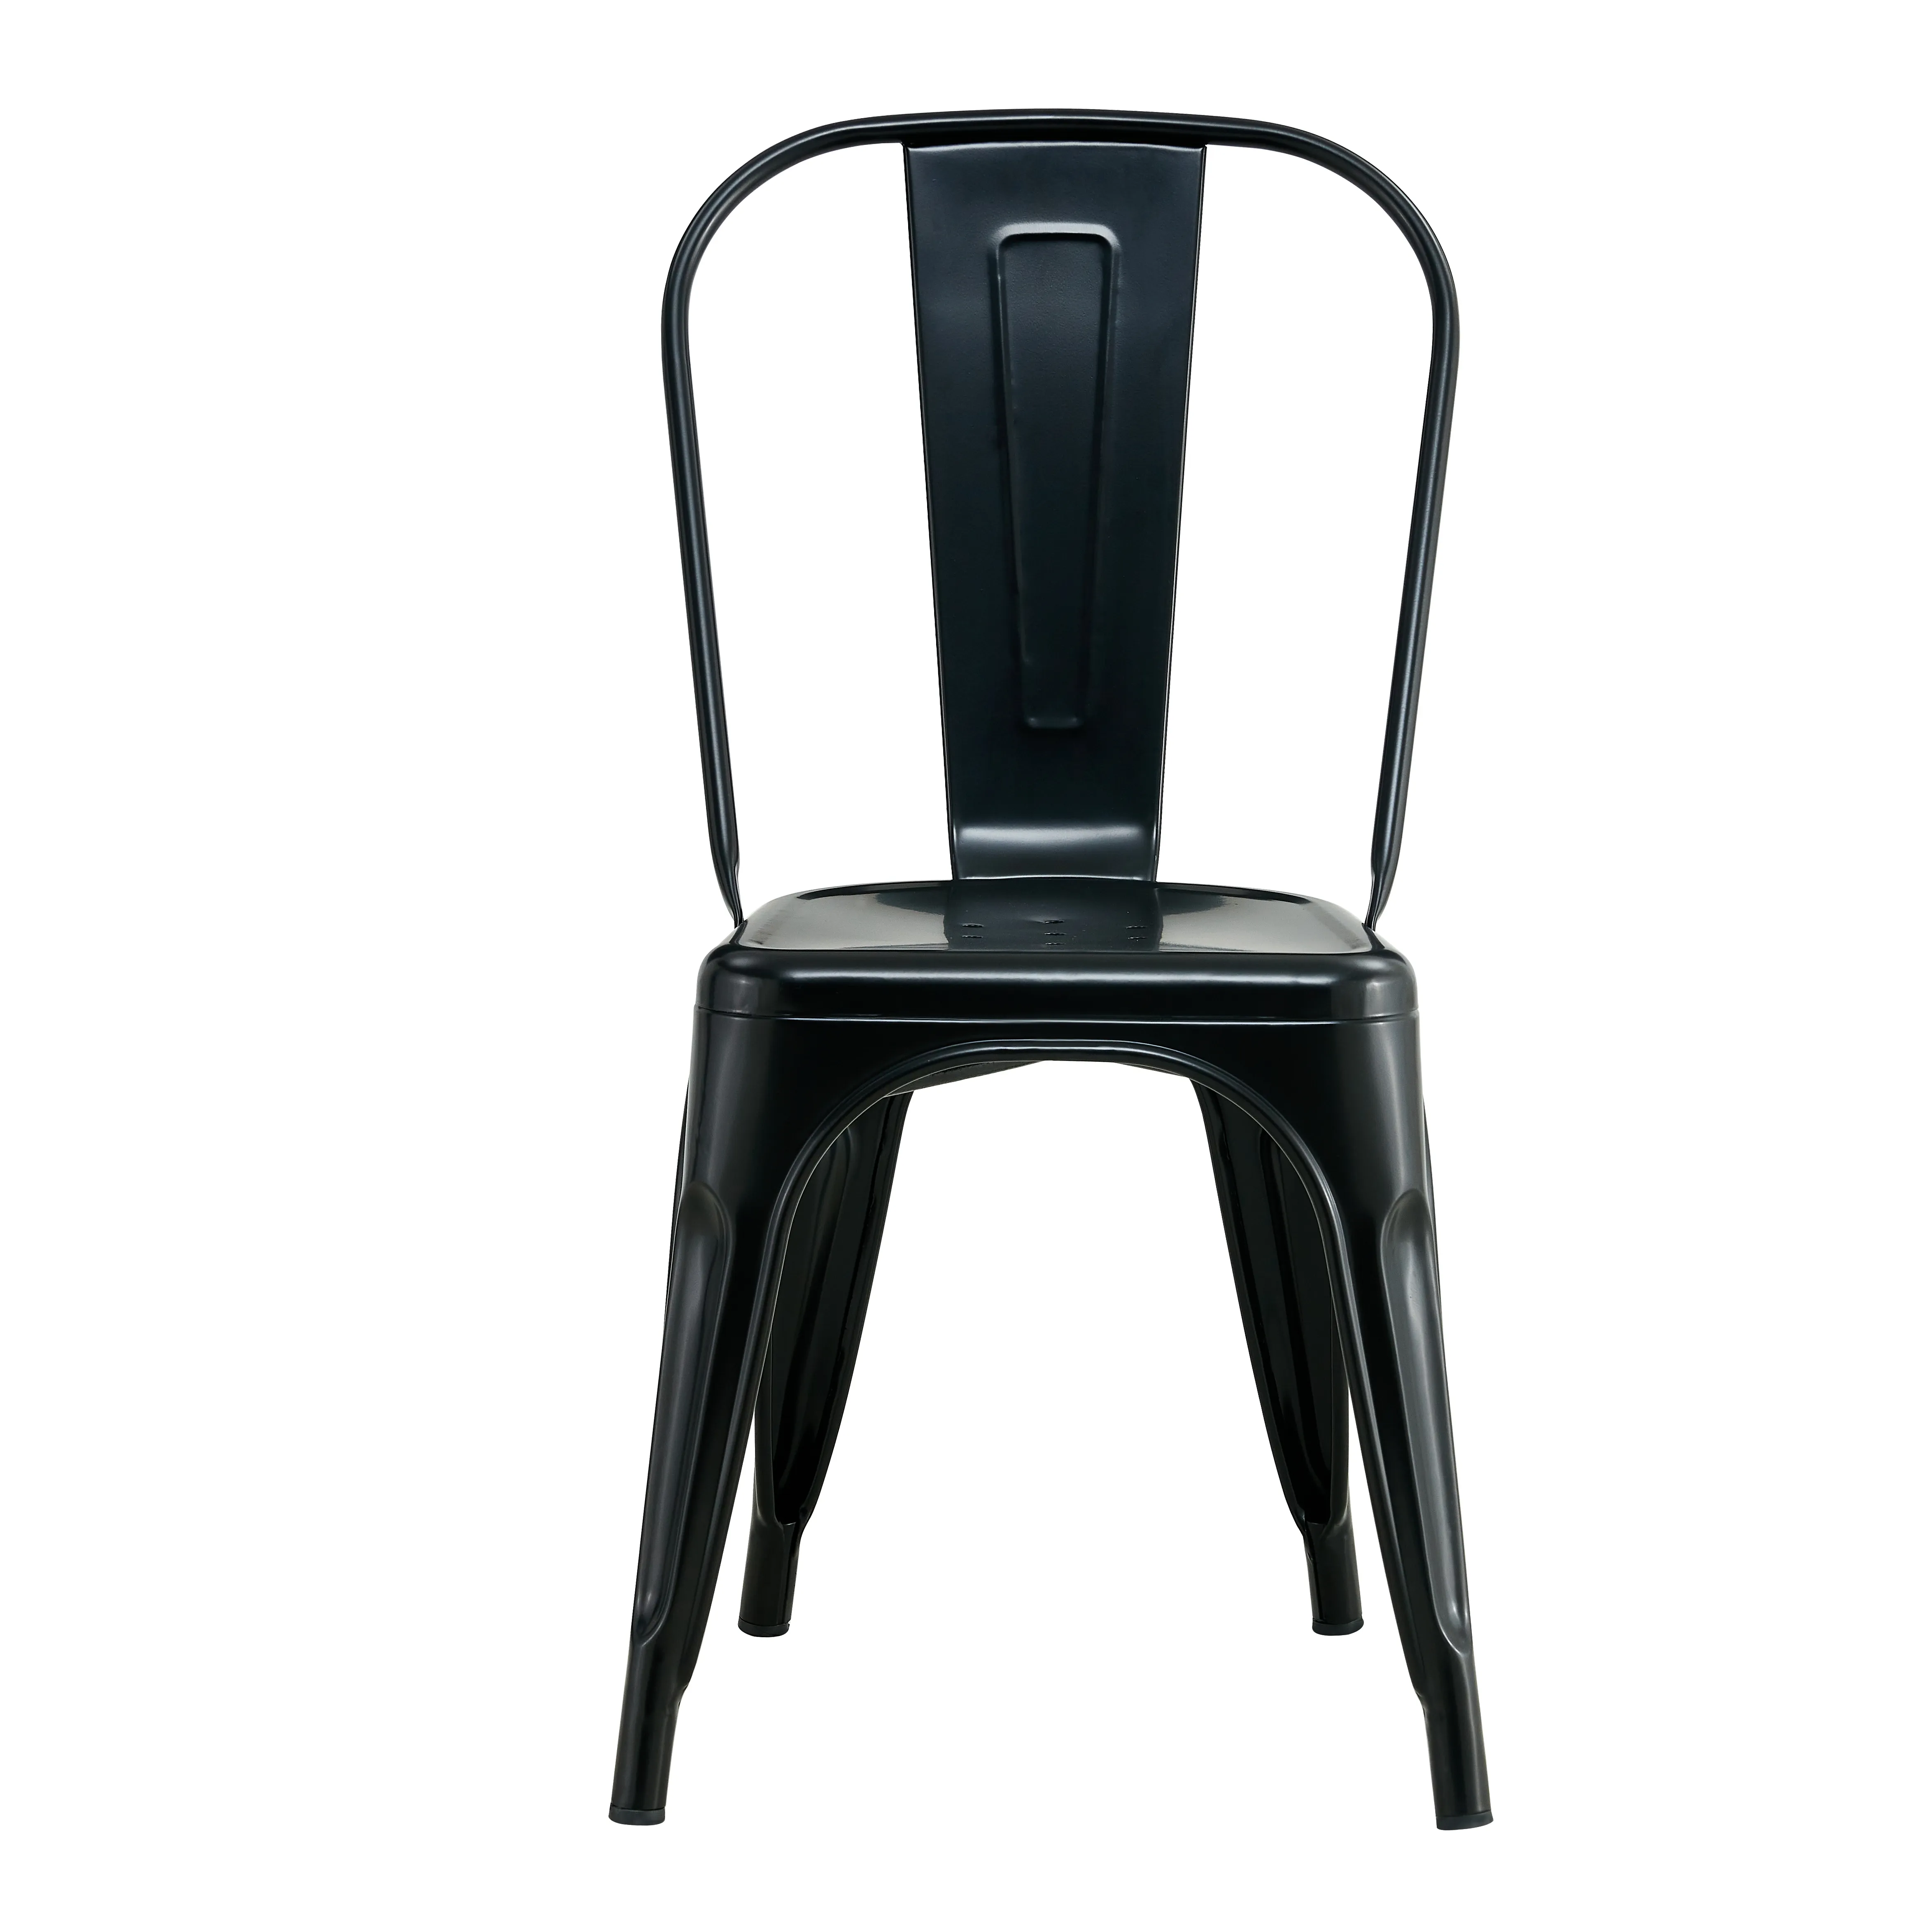 Cadeiras modernas personalizadas conciso quadradas tubulares da mobília do metal da estrutura da cadeira de jantar